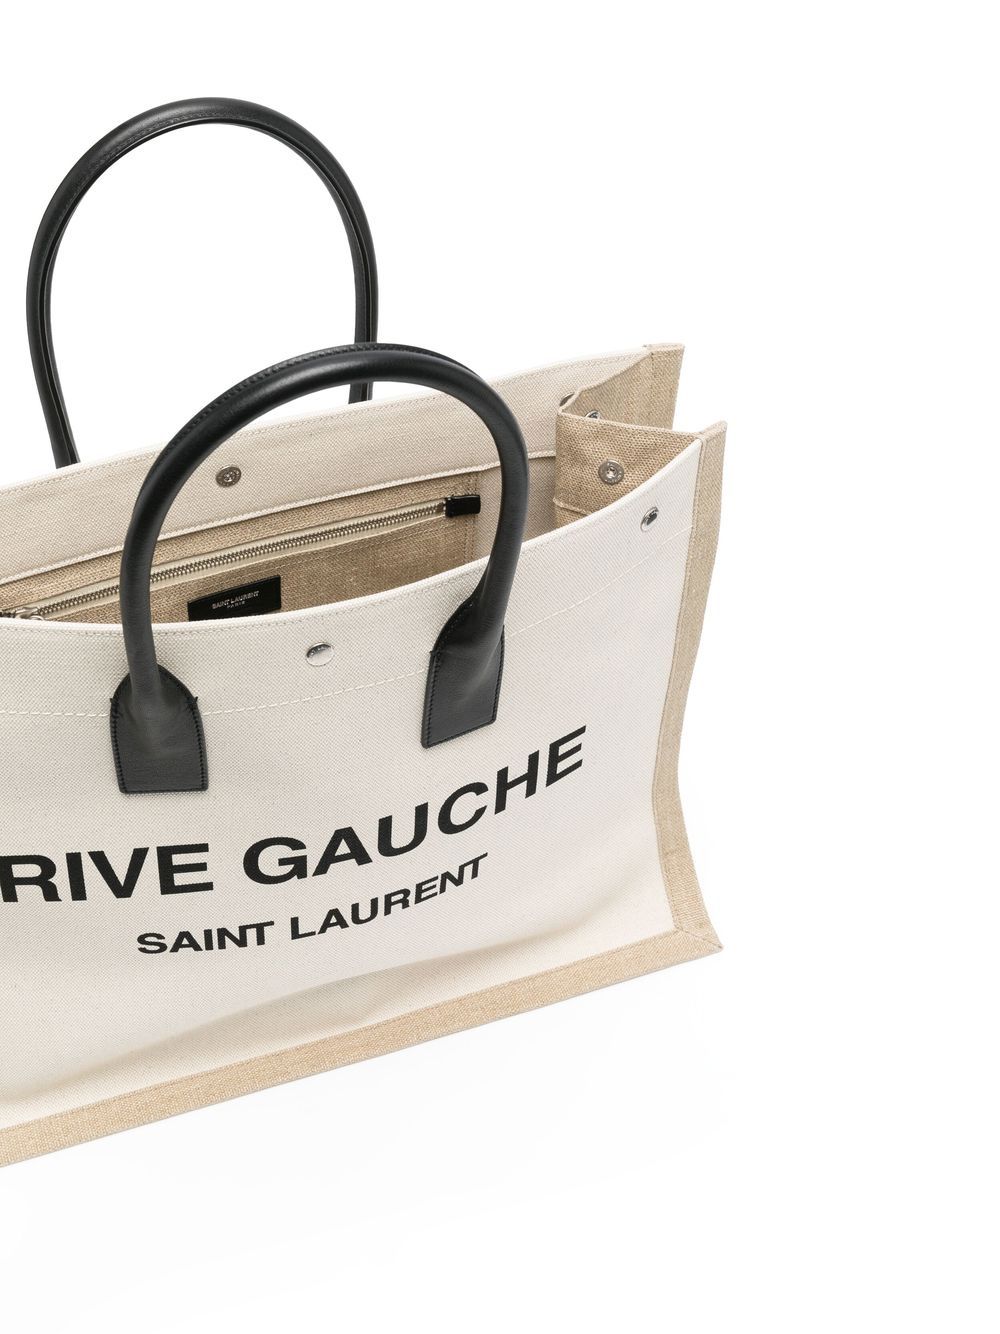 Saint Laurent sac cabas Rive Gauche